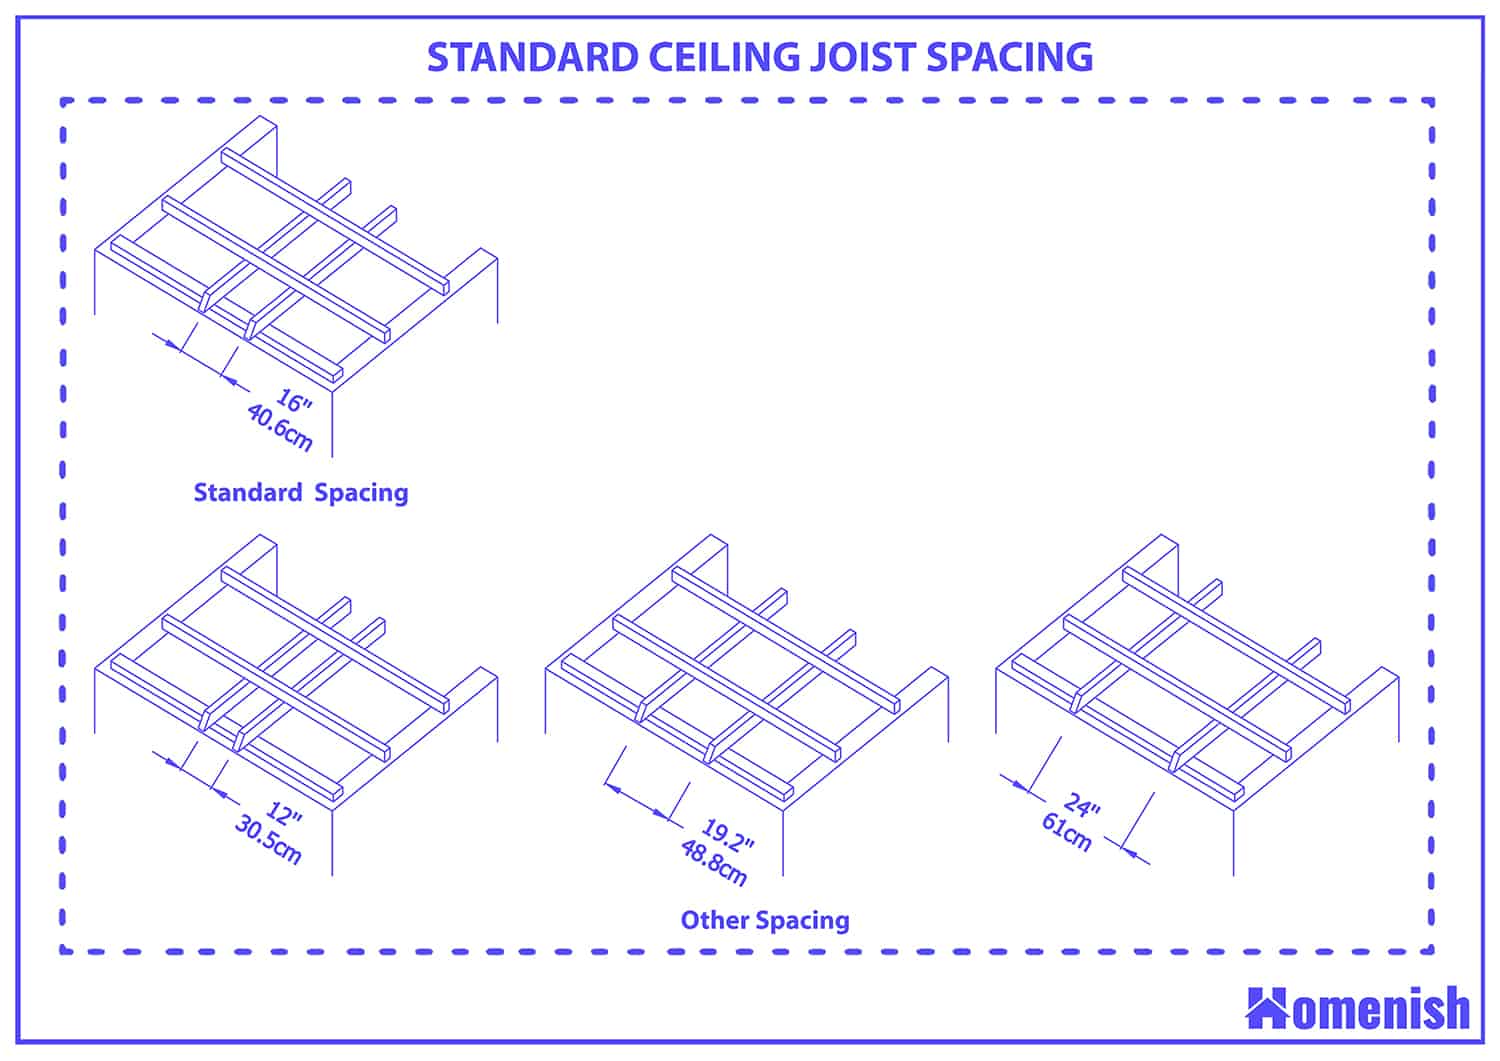 Standard ceiling joist spacing